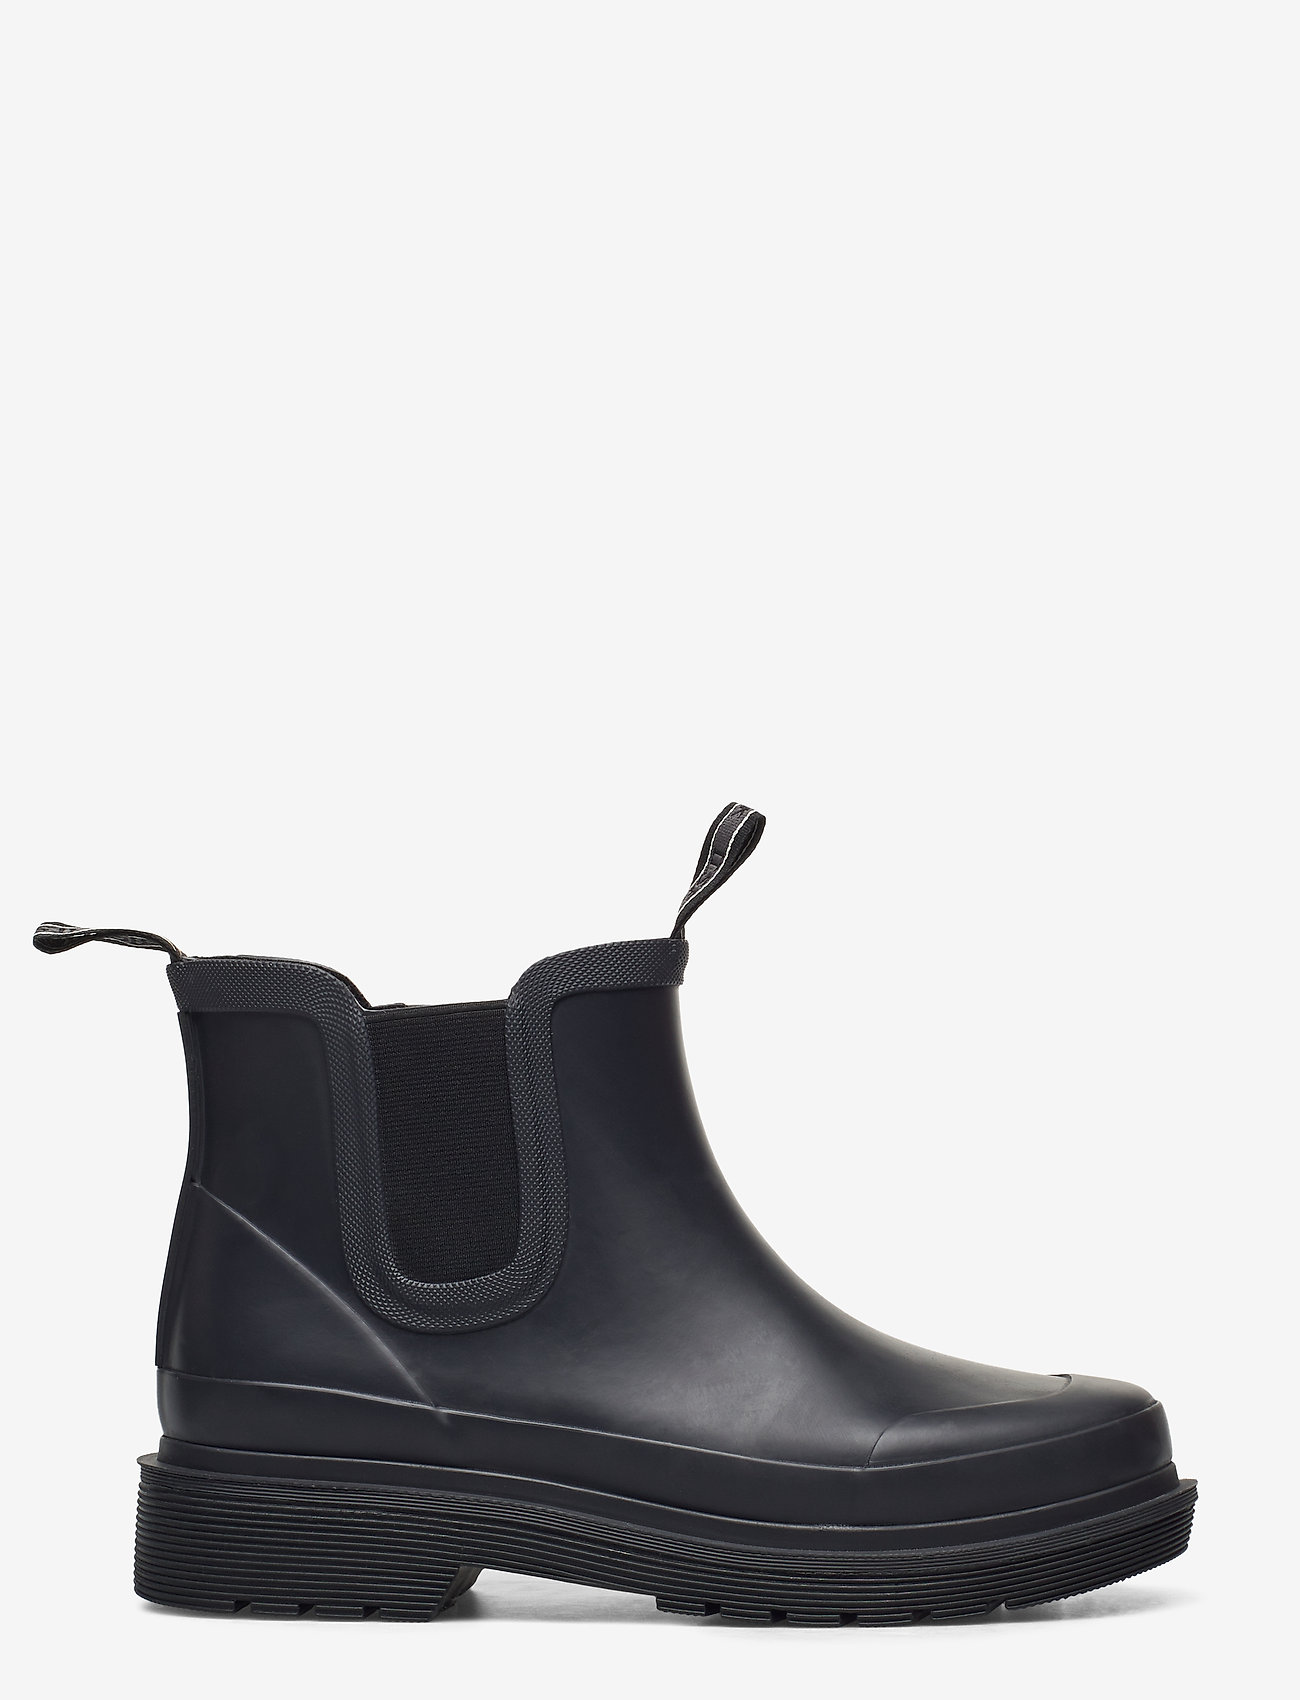 Ilse Jacobsen - Rubber boots ankel - kvinner - black - 1